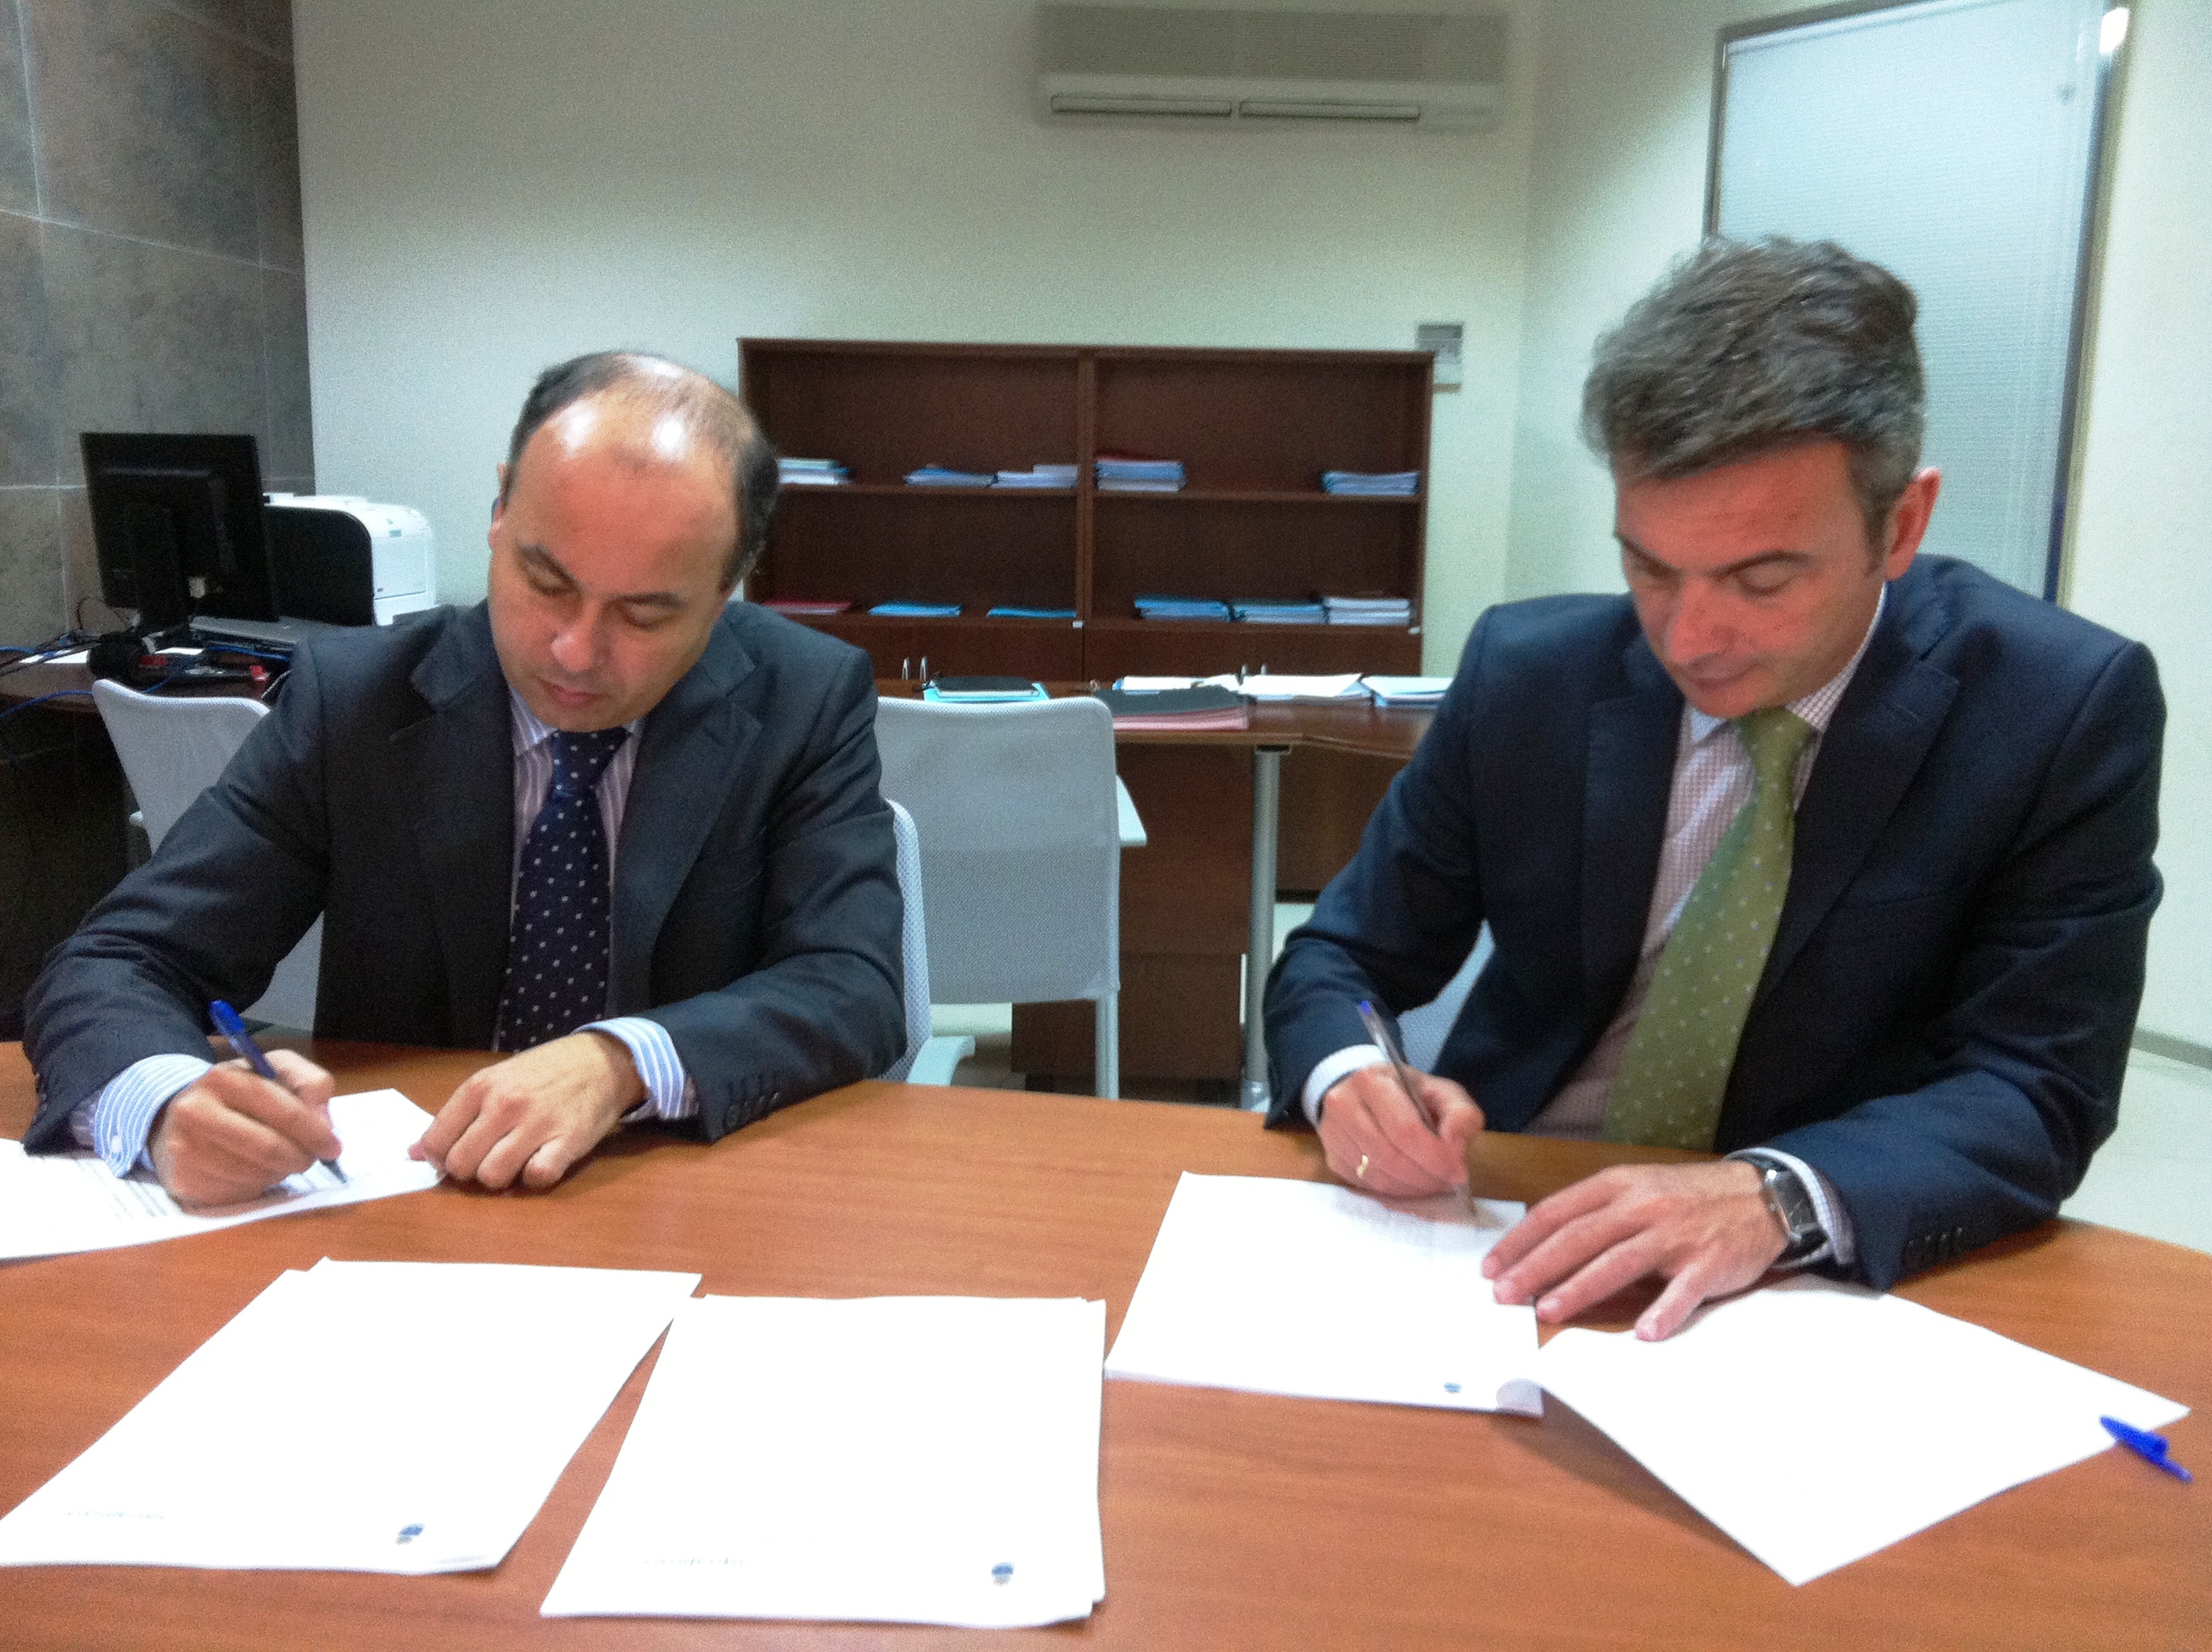 De izquierda a derecha; Antonio Gavira, gerente de aquajerez, y Eduardo González, rector de la Universidad de Cádiz, firmando el acuerdo de colaboración entre ambas entidades.